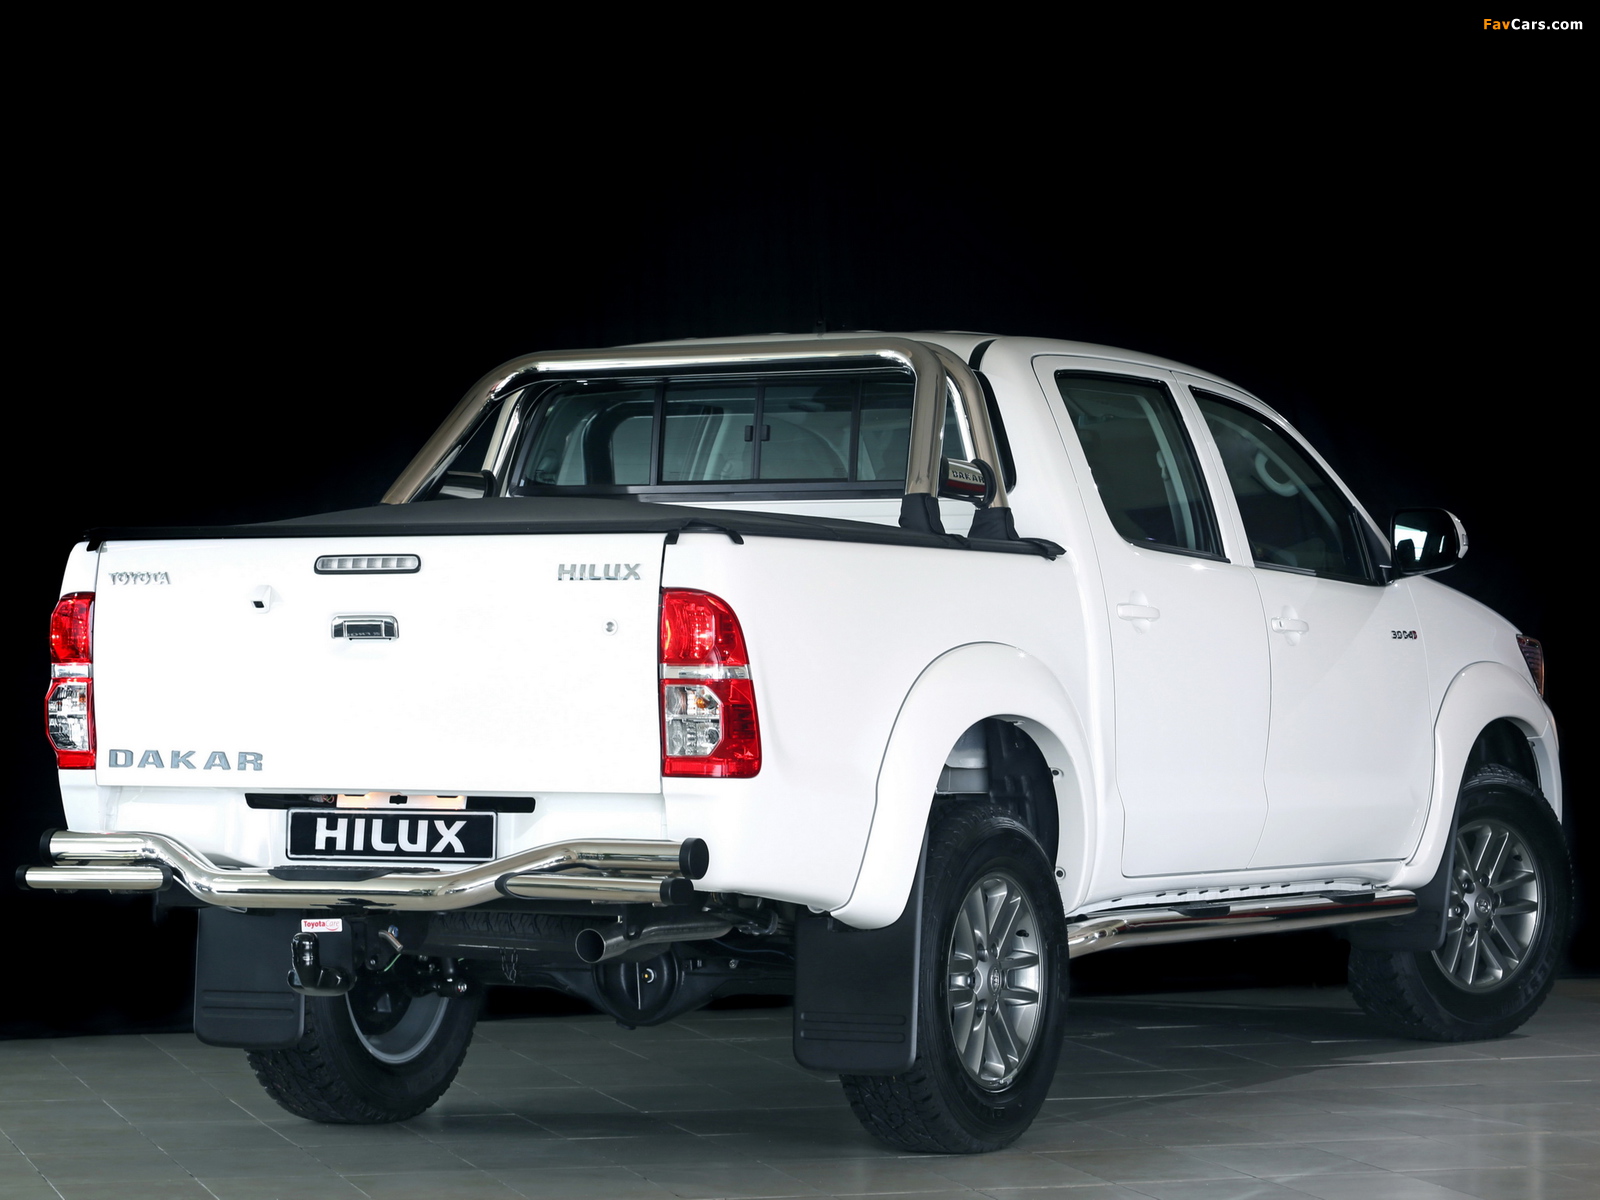 Toyota Hilux Dakar Double Cab 2014 photos (1600 x 1200)